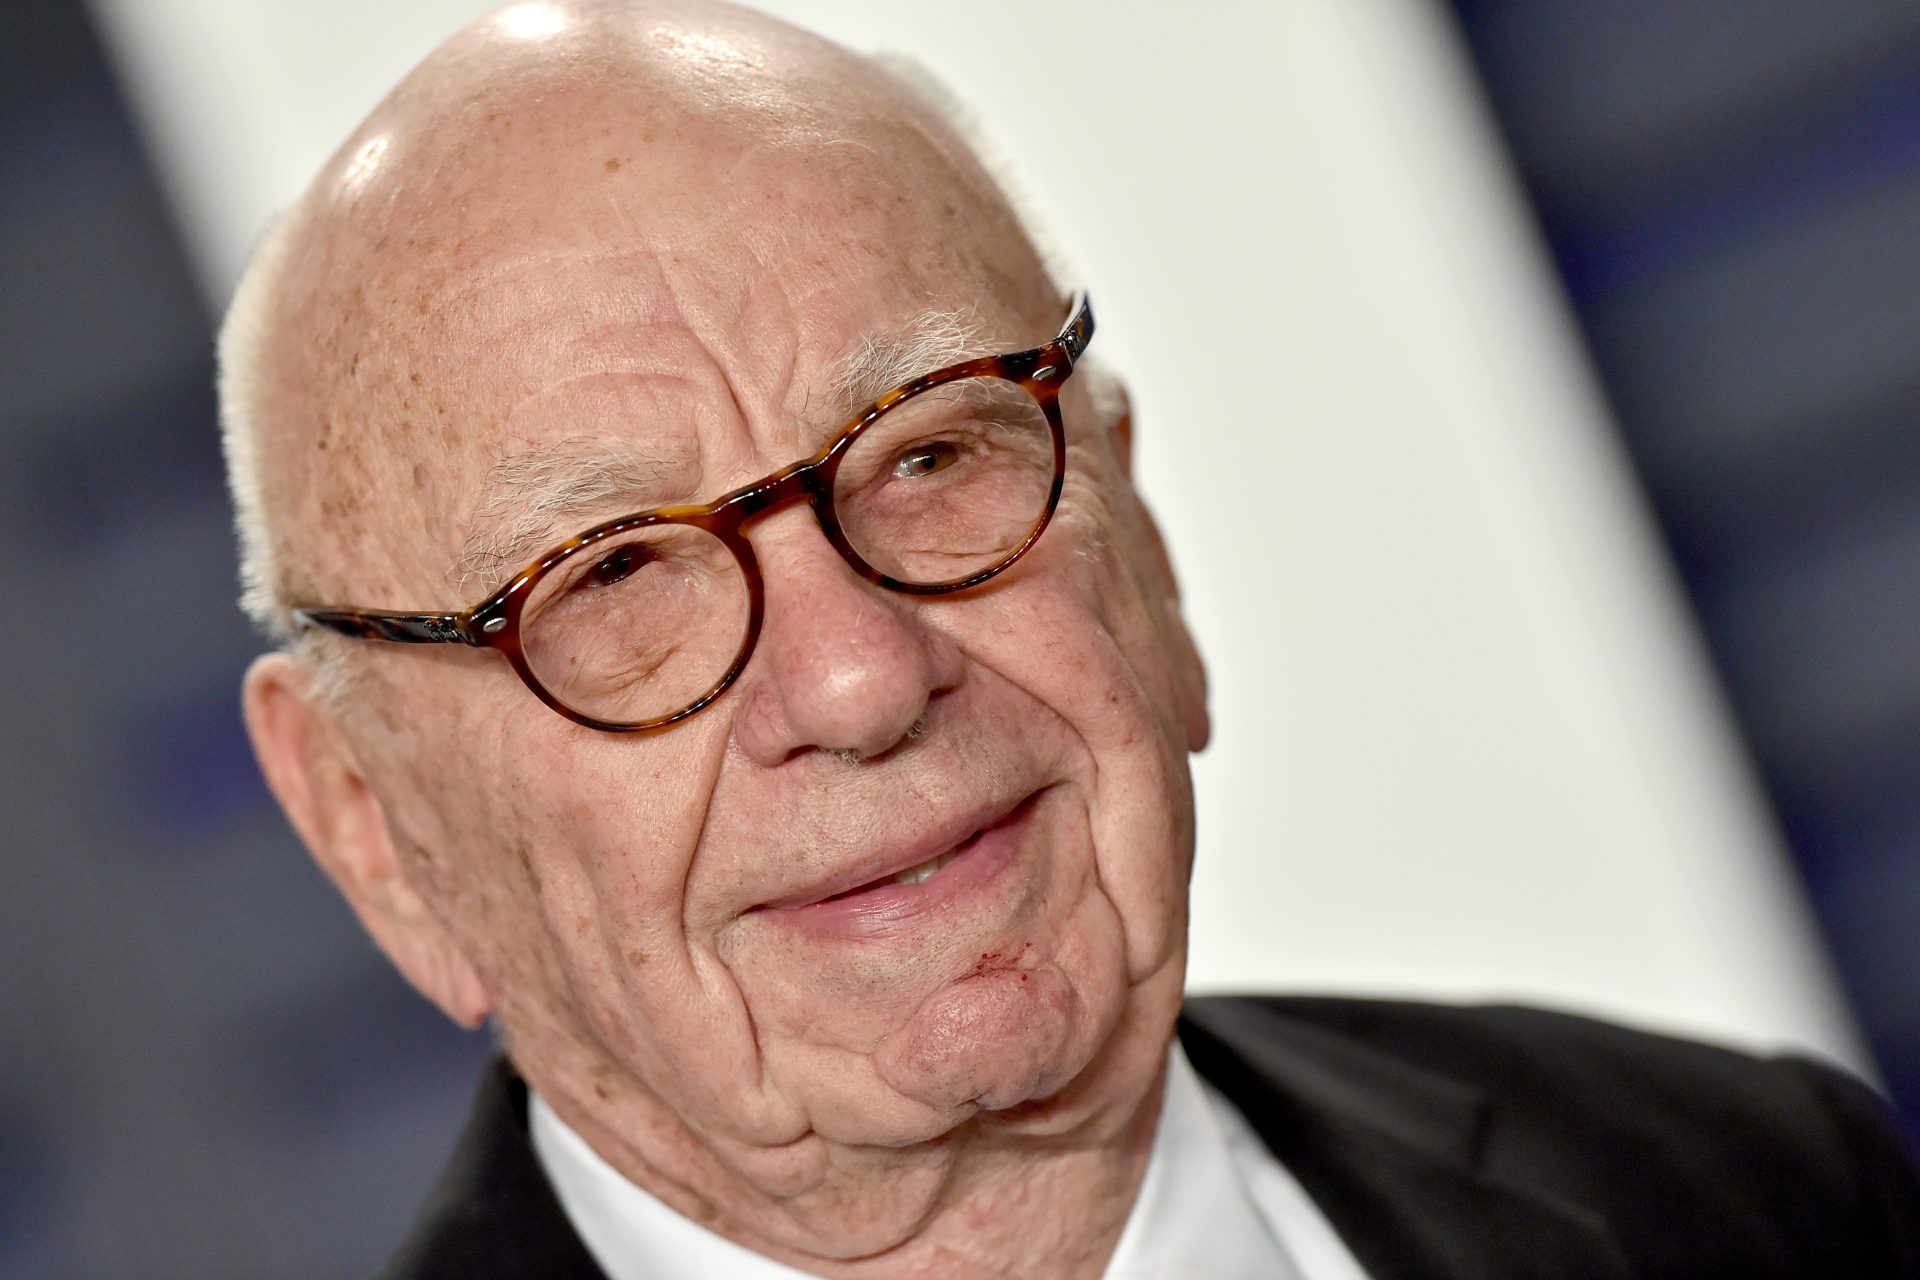 Rupert Murdoch, 92, is engaged 